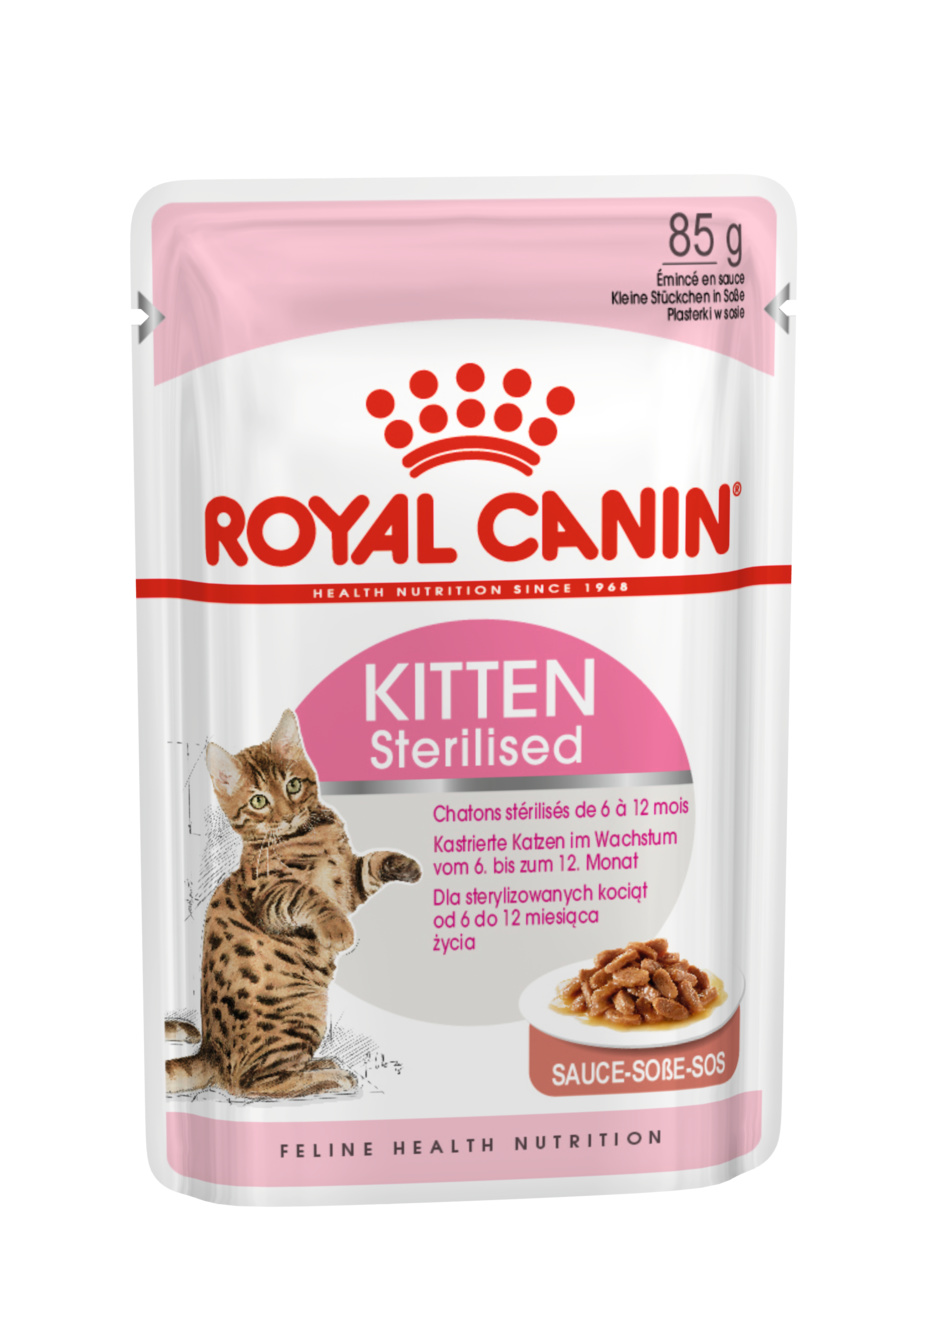 Royal Canin кусочки в соусе для котят с момента операции до 12 месяцев (85 г)